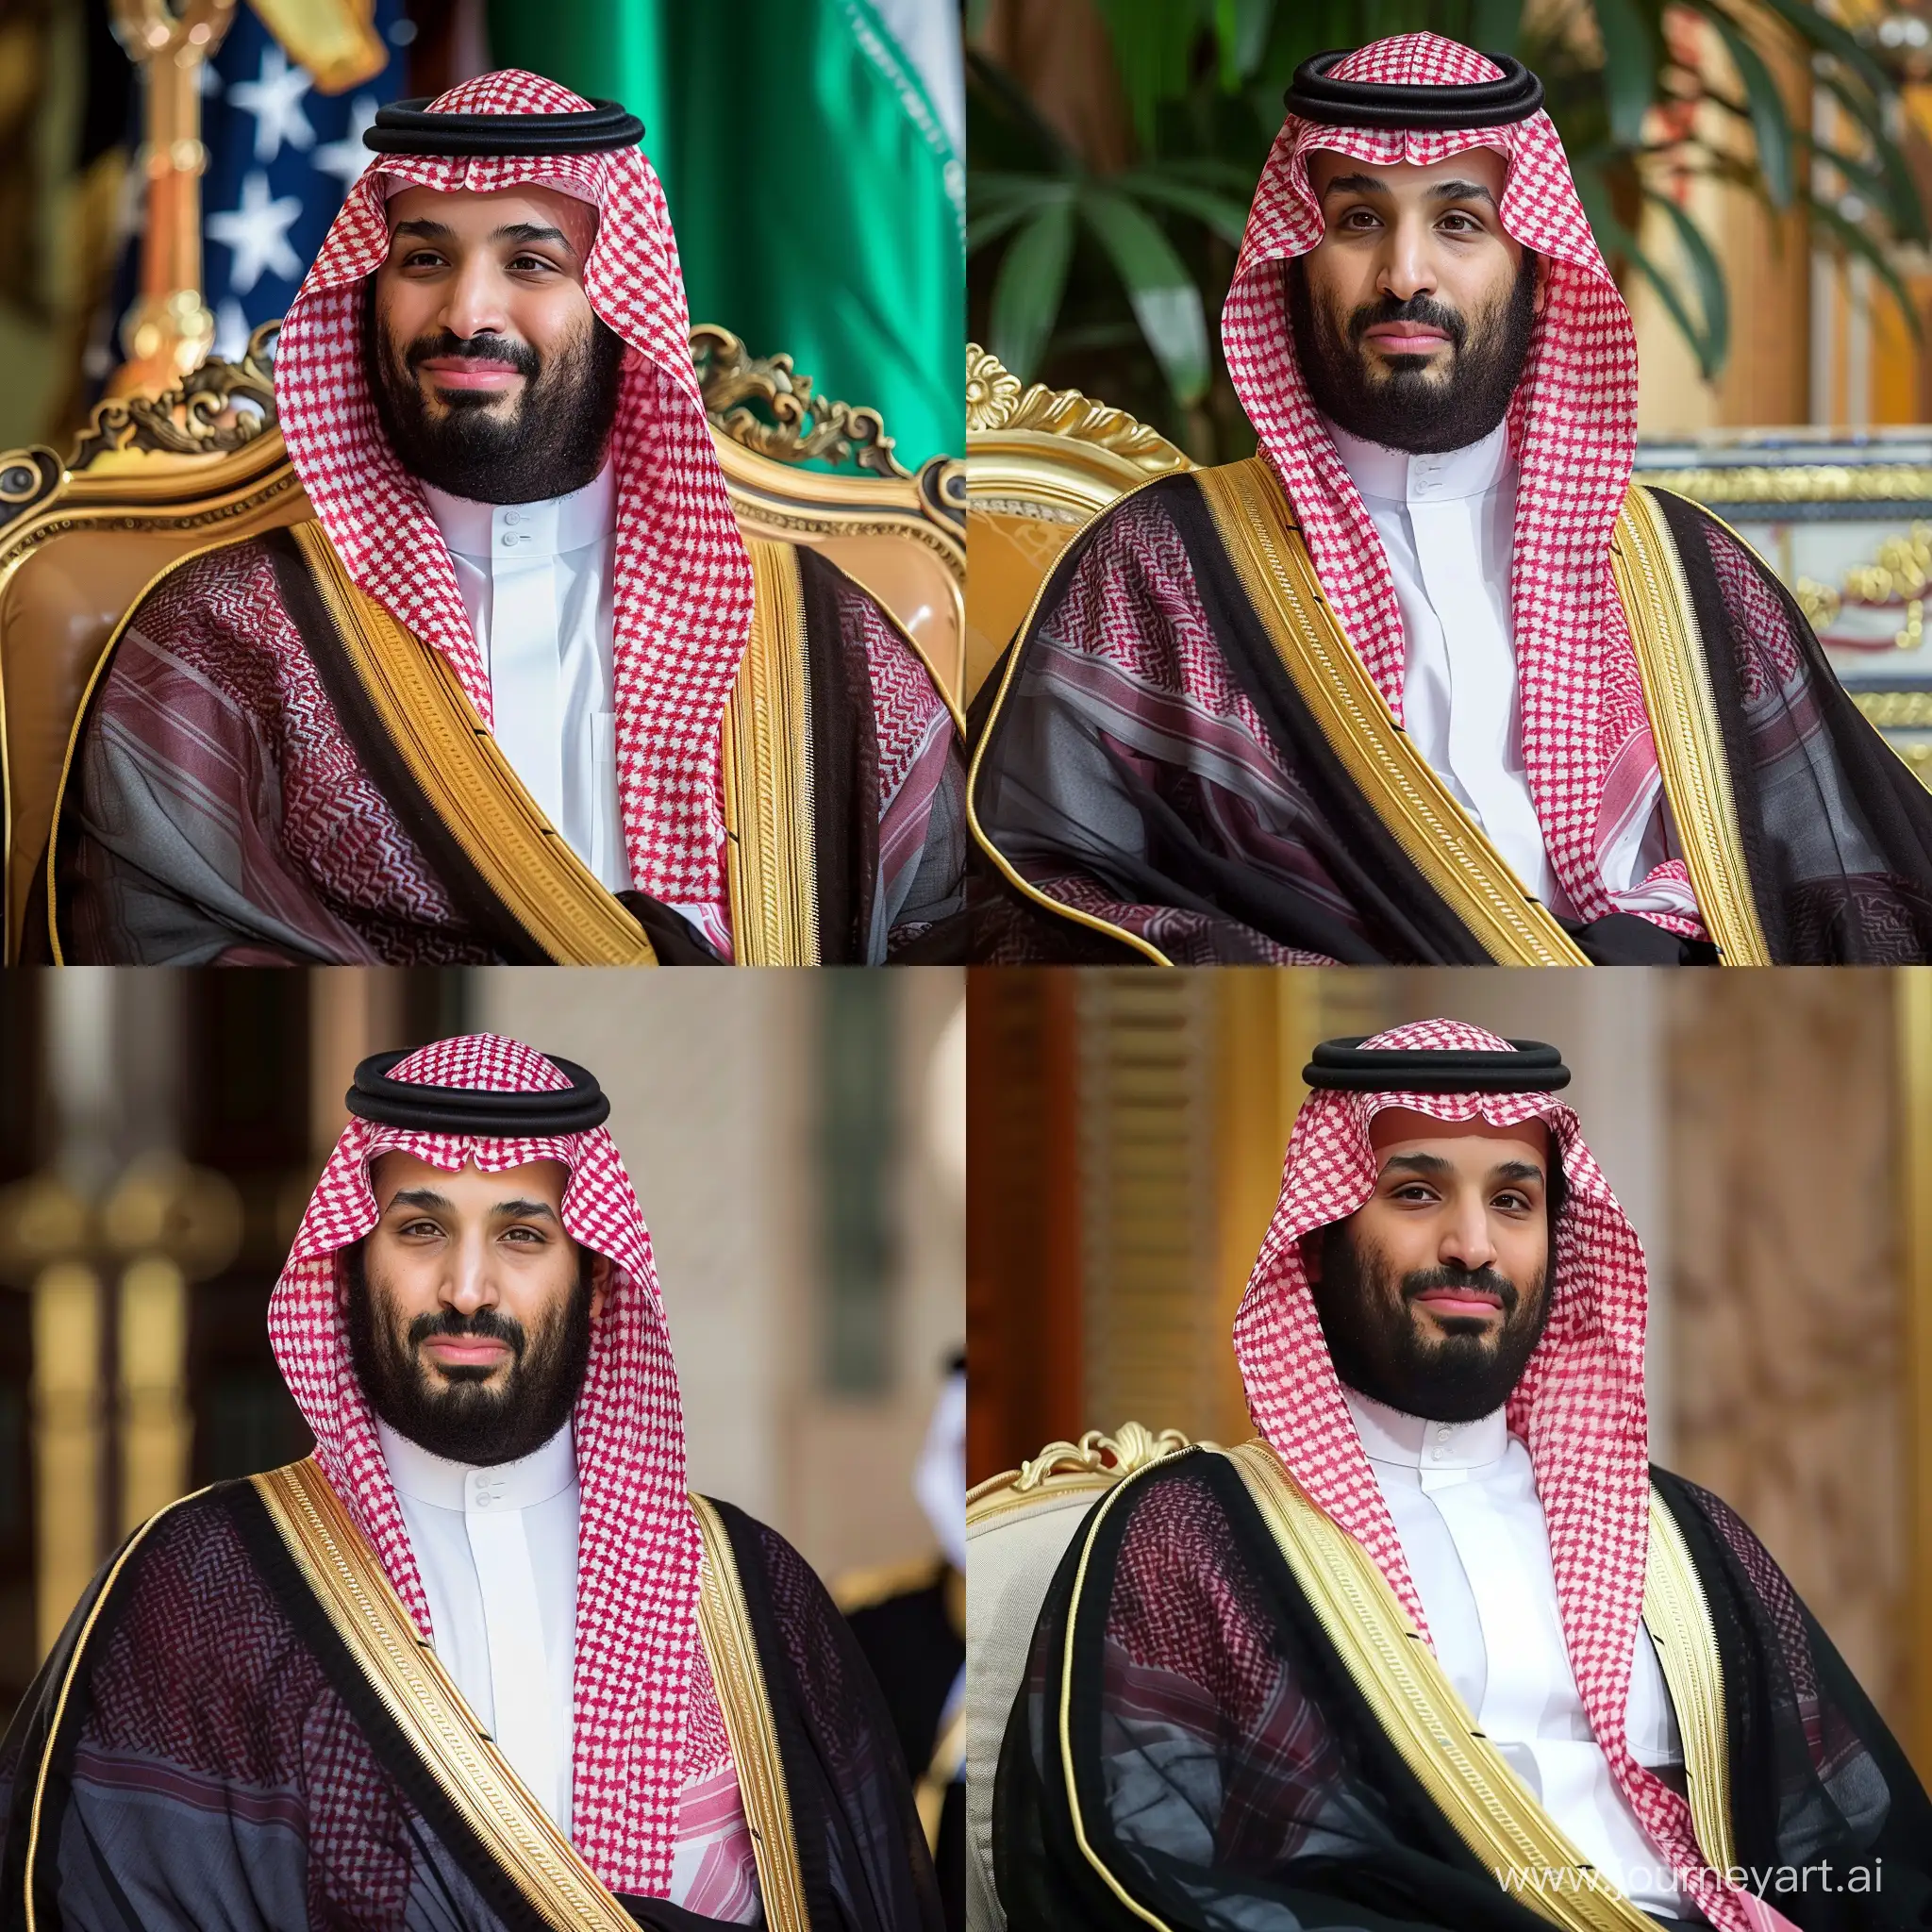 Mohammed-bin-Salman-Portrait-in-Arab-Attire